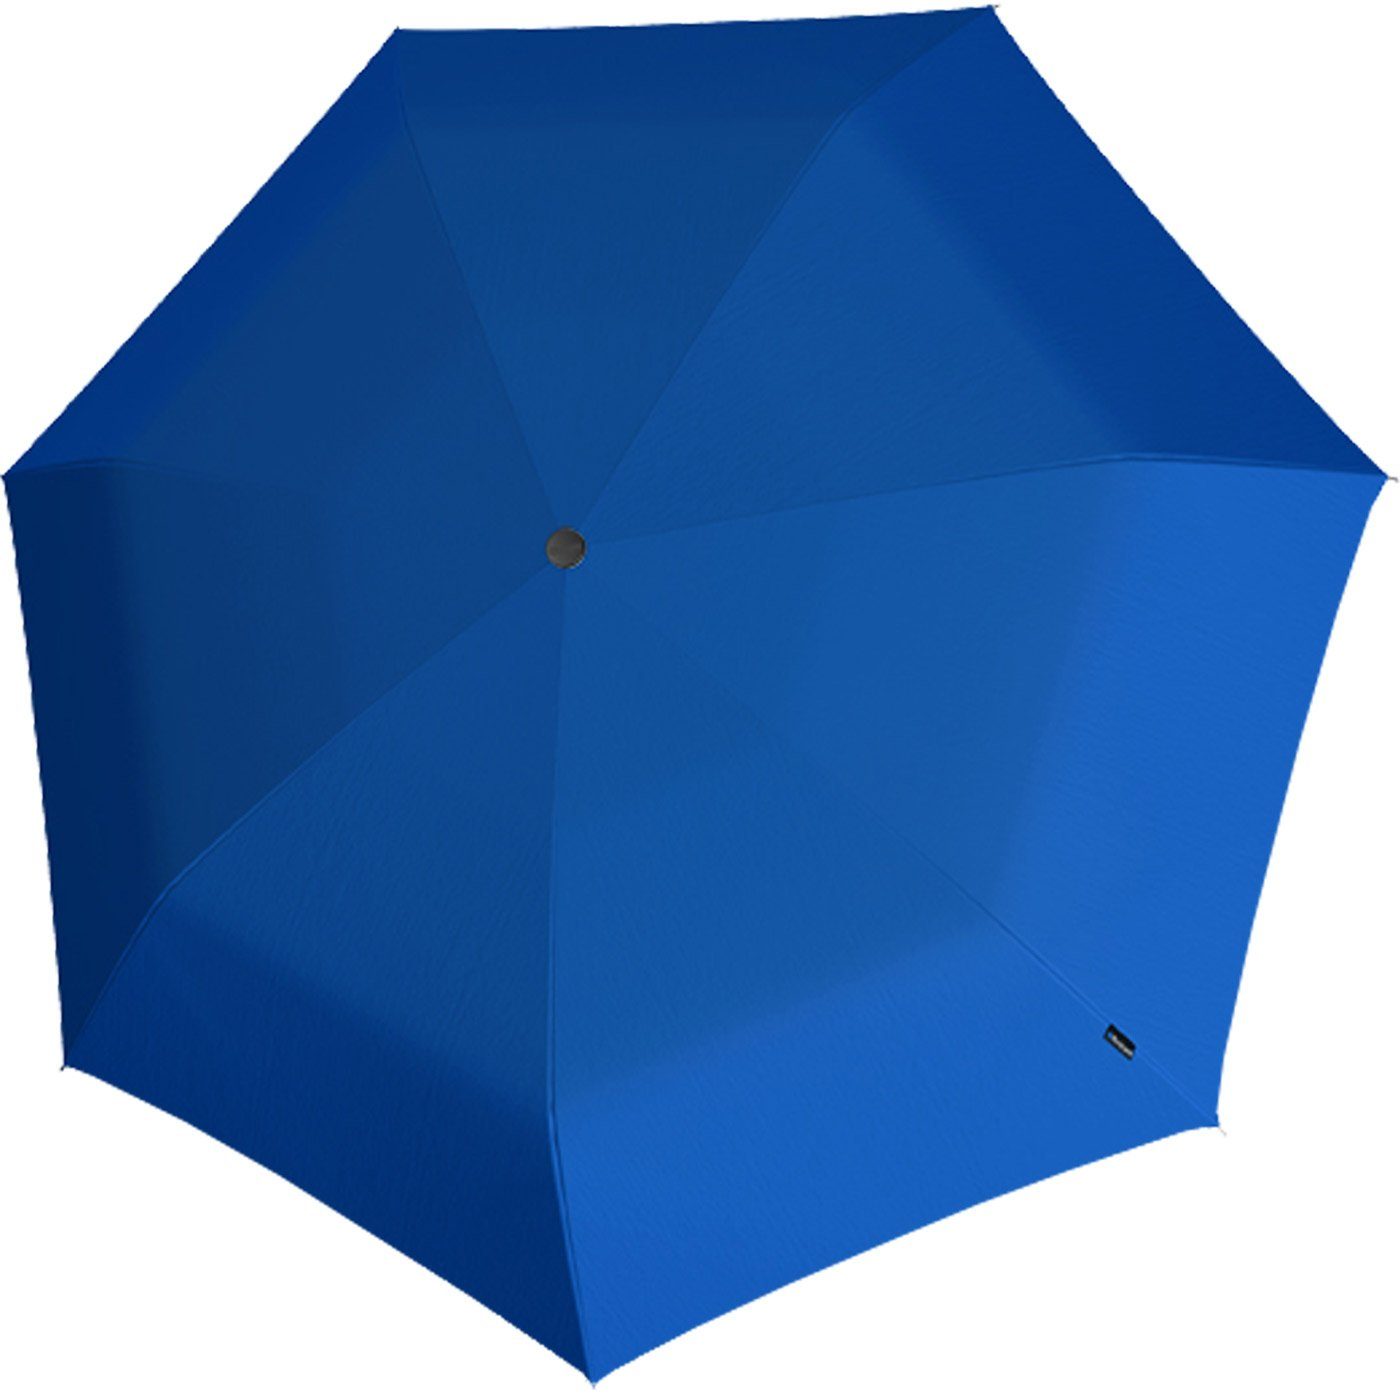 Handtasche blue Automatikschirm Taschenregenschirm E.100 Mini-Schirm mit Auf-Zu-Automatik, kompakter kleiner, die Knirps® für